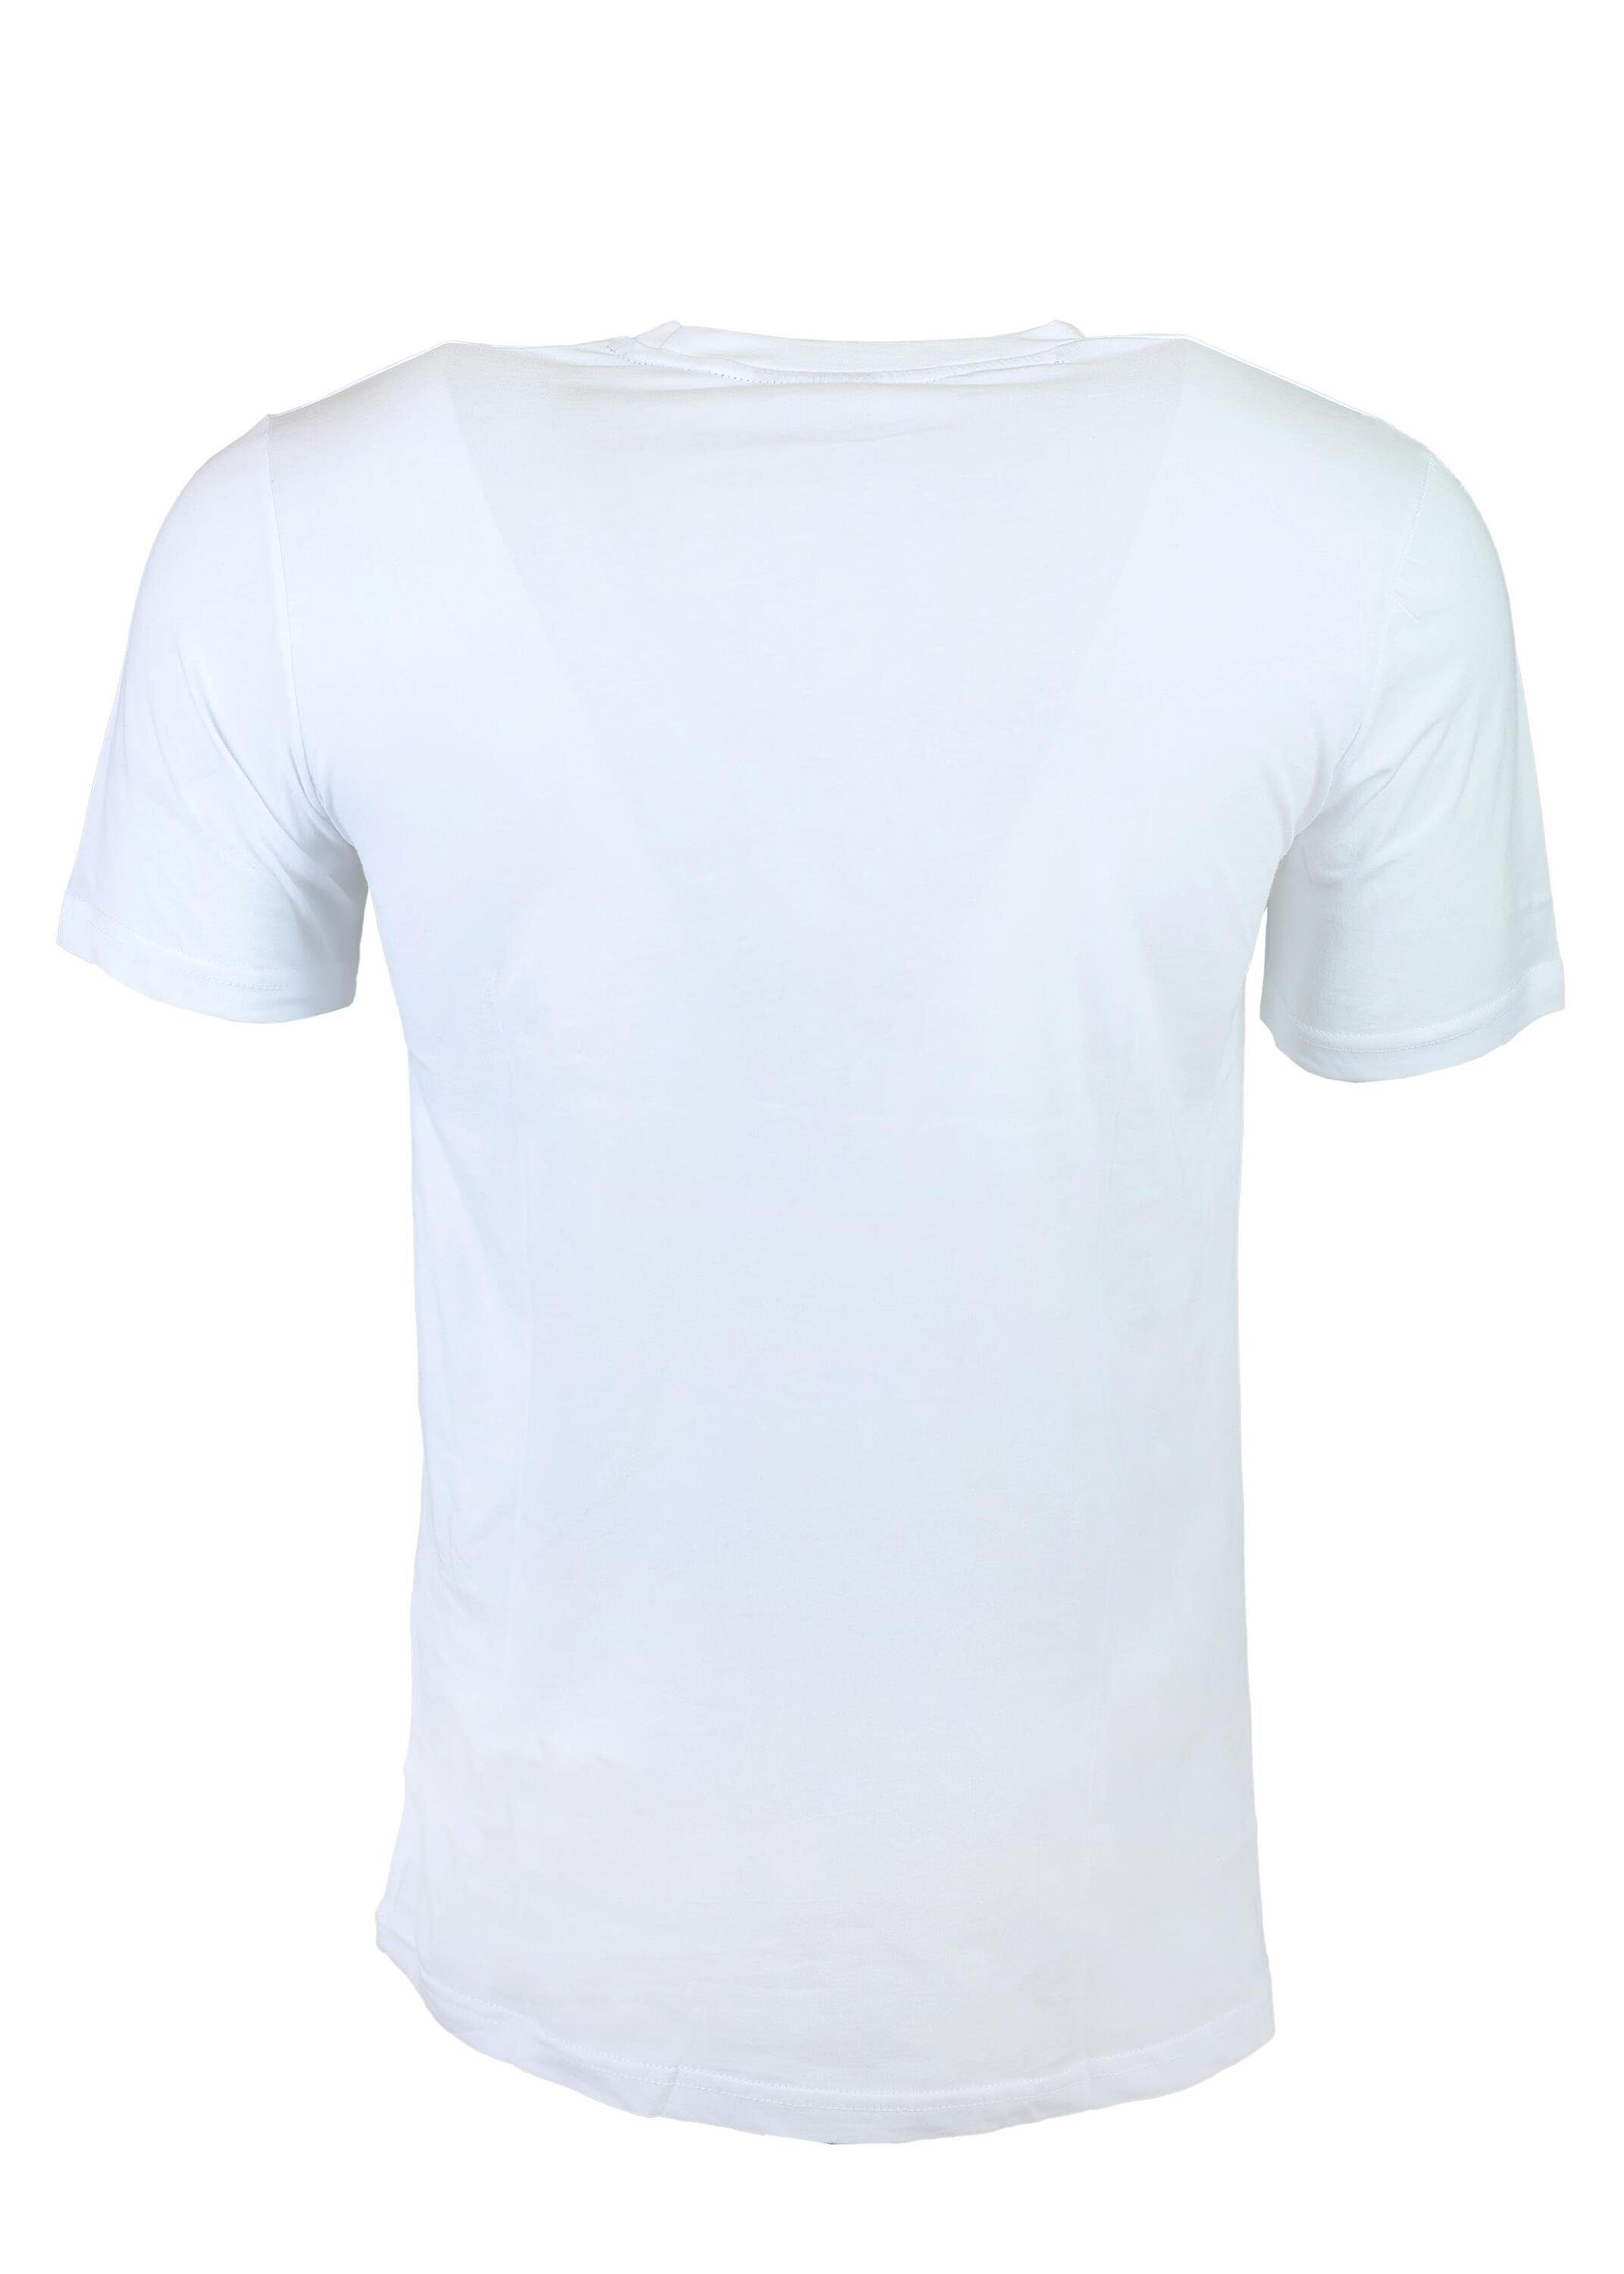 FuPer T-Shirt für Fußball, White Kinder, aus Tarik Jugend Baumwolle